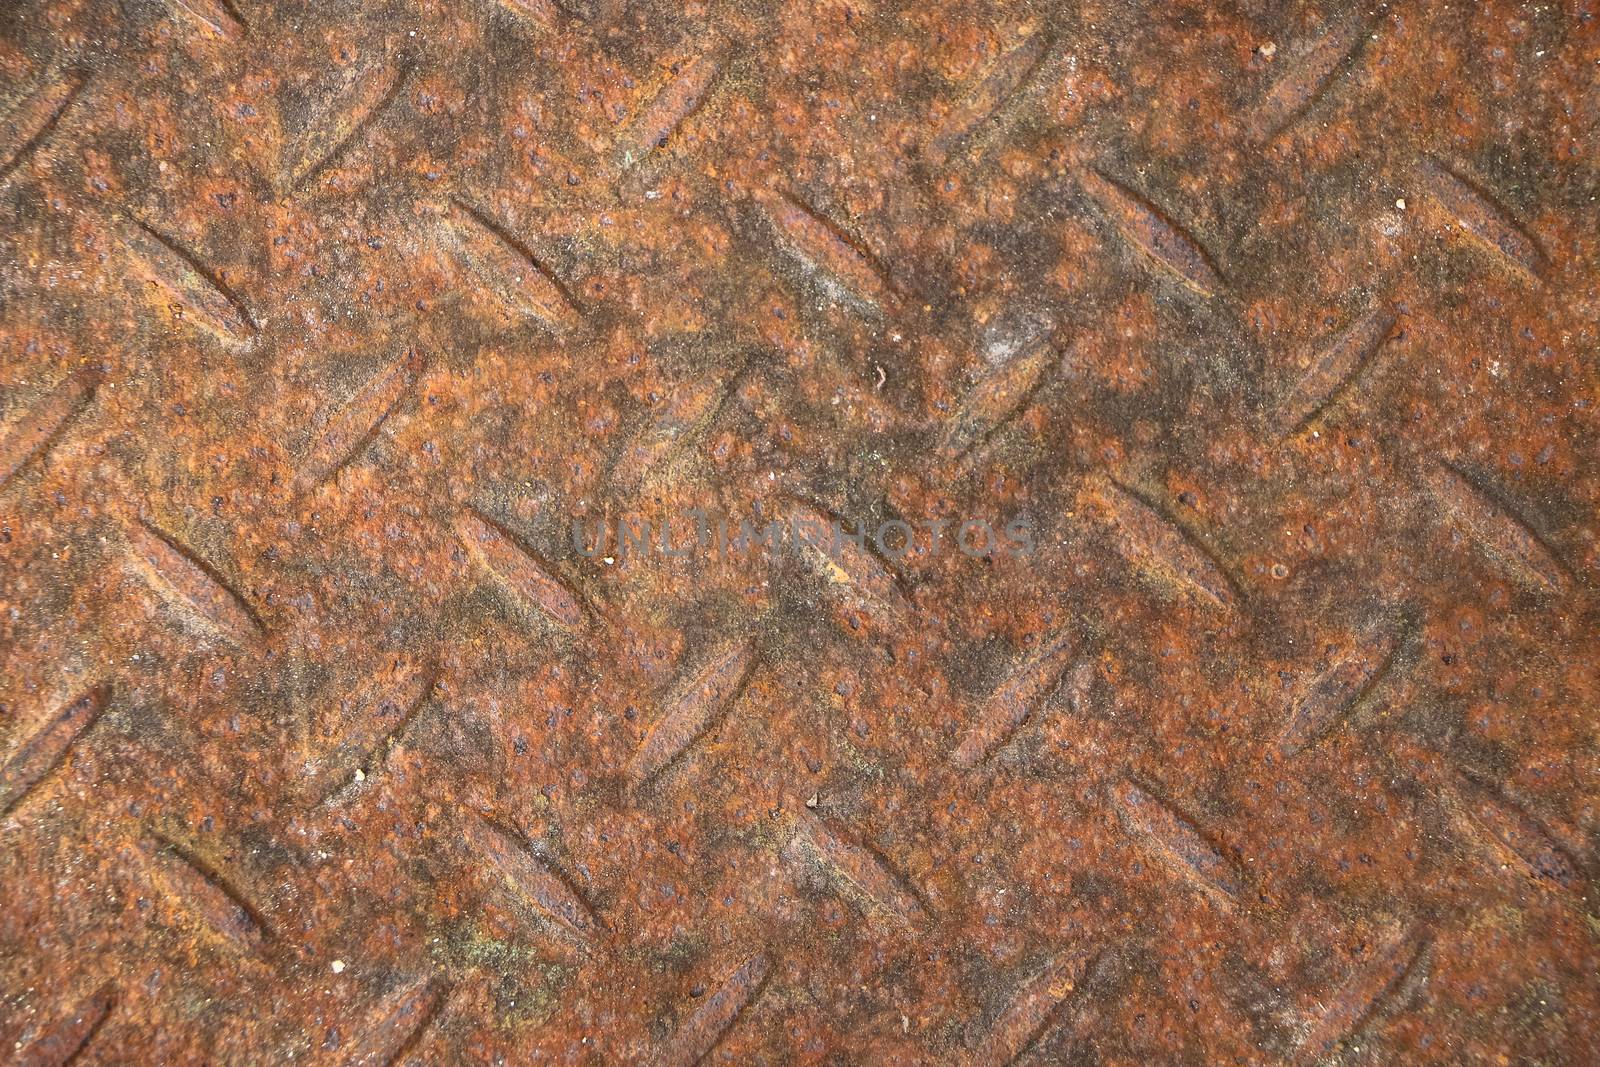 Rusty metal grate in landscape orientation